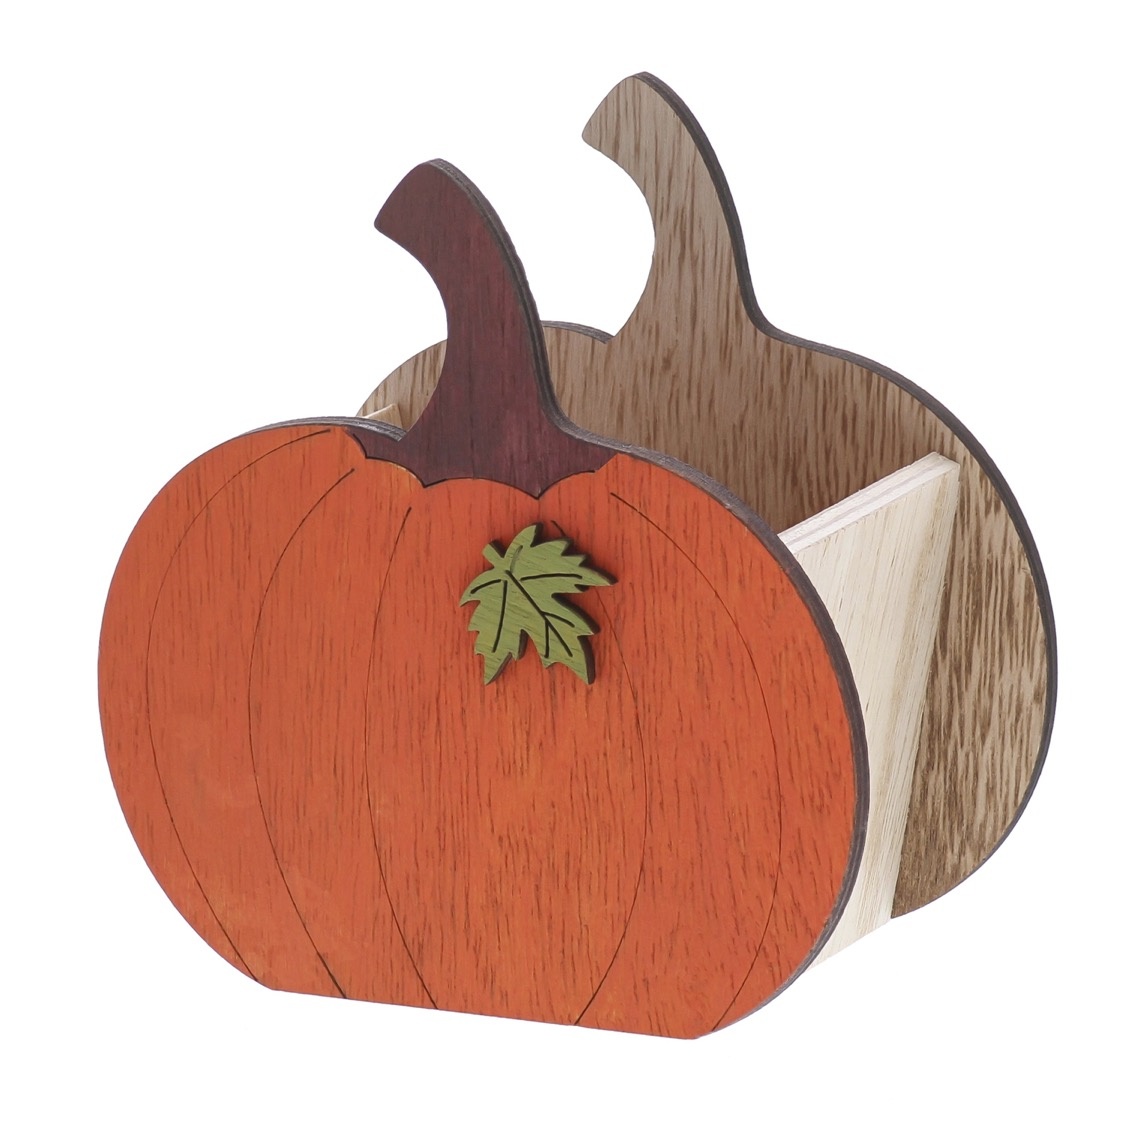 Hello Autumn "Musky" pumpkin bowl. - 114*118*68mm - 3 pieces